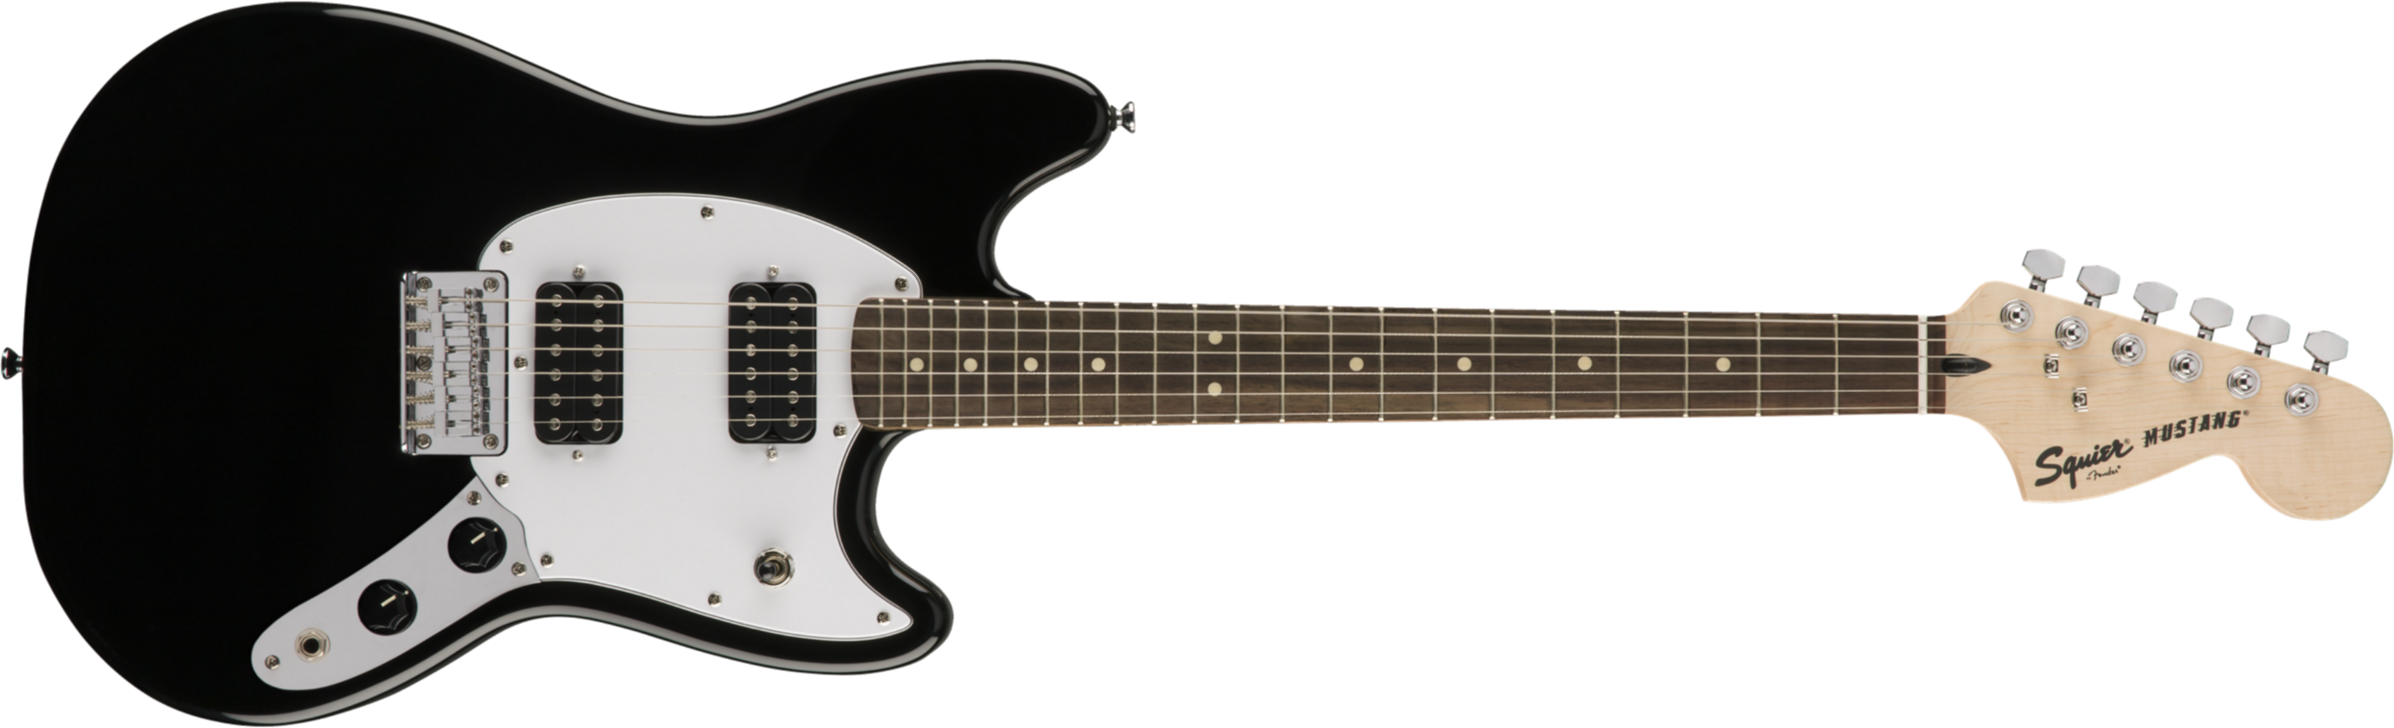 Squier Mustang Bullet Hh 2019 Ht Lau - Black - Retro-Rock-E-Gitarre - Main picture